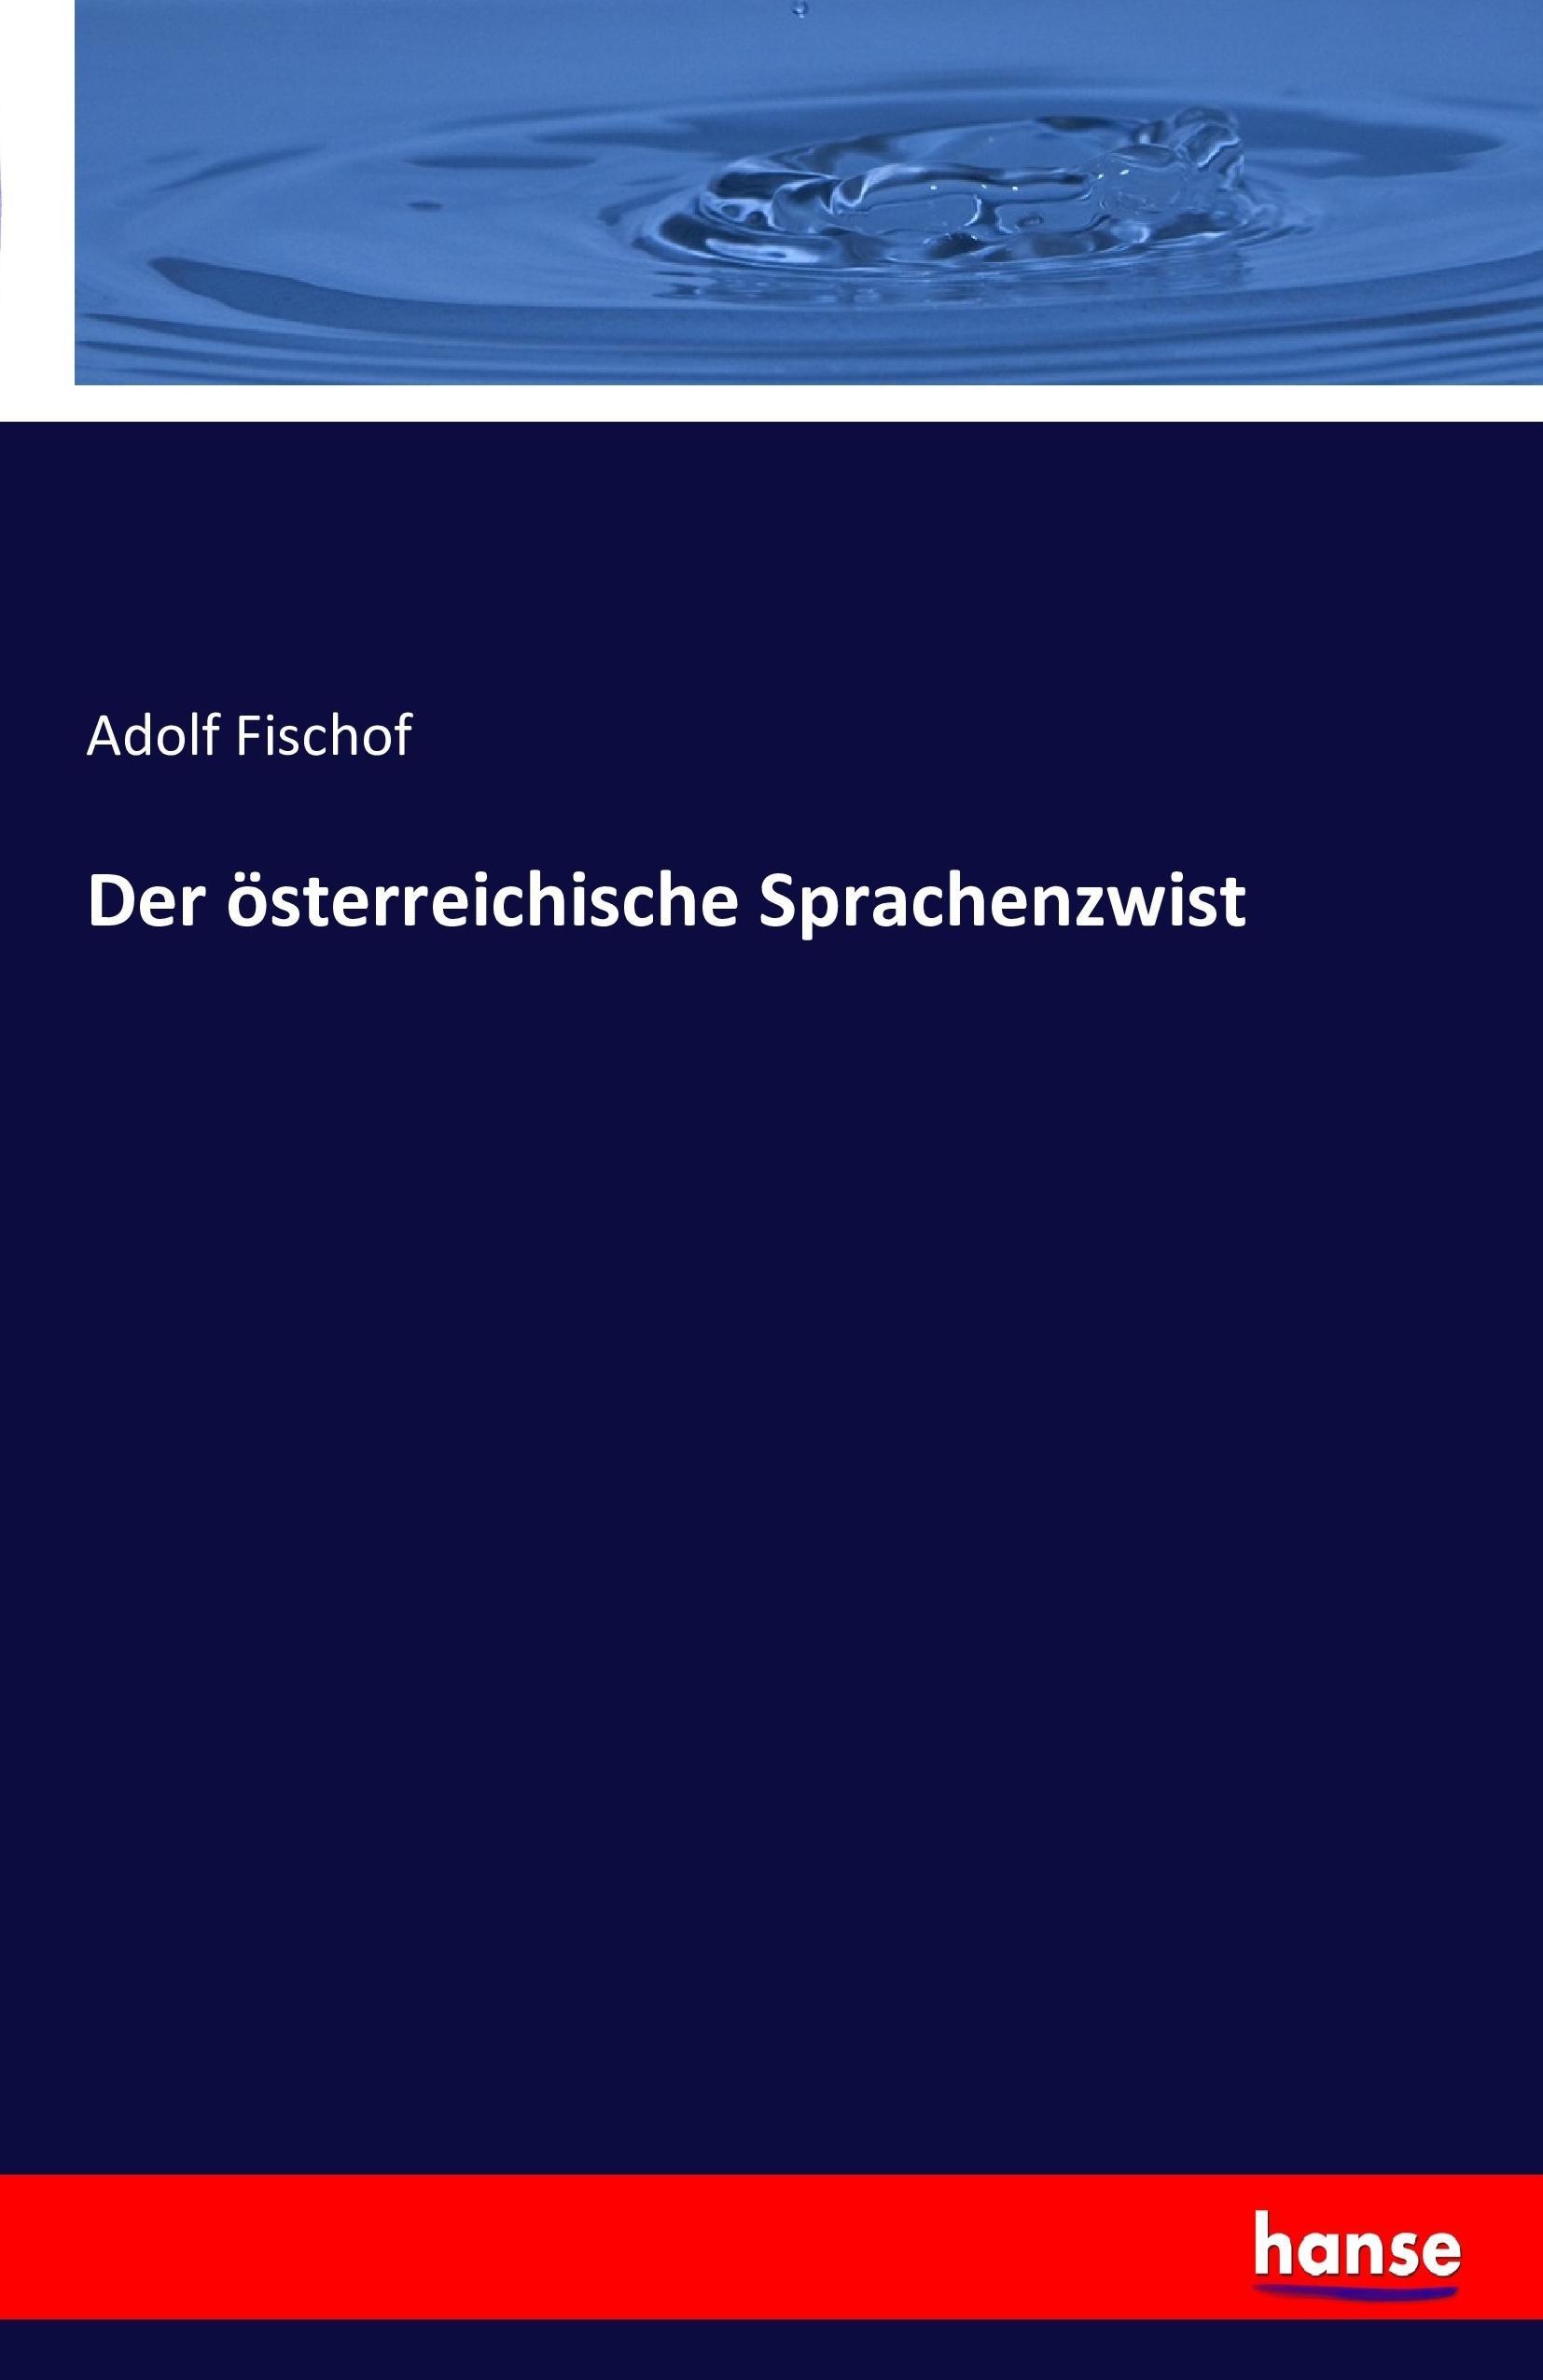 Der oesterreichische Sprachenzwist - Fischof, Adolf